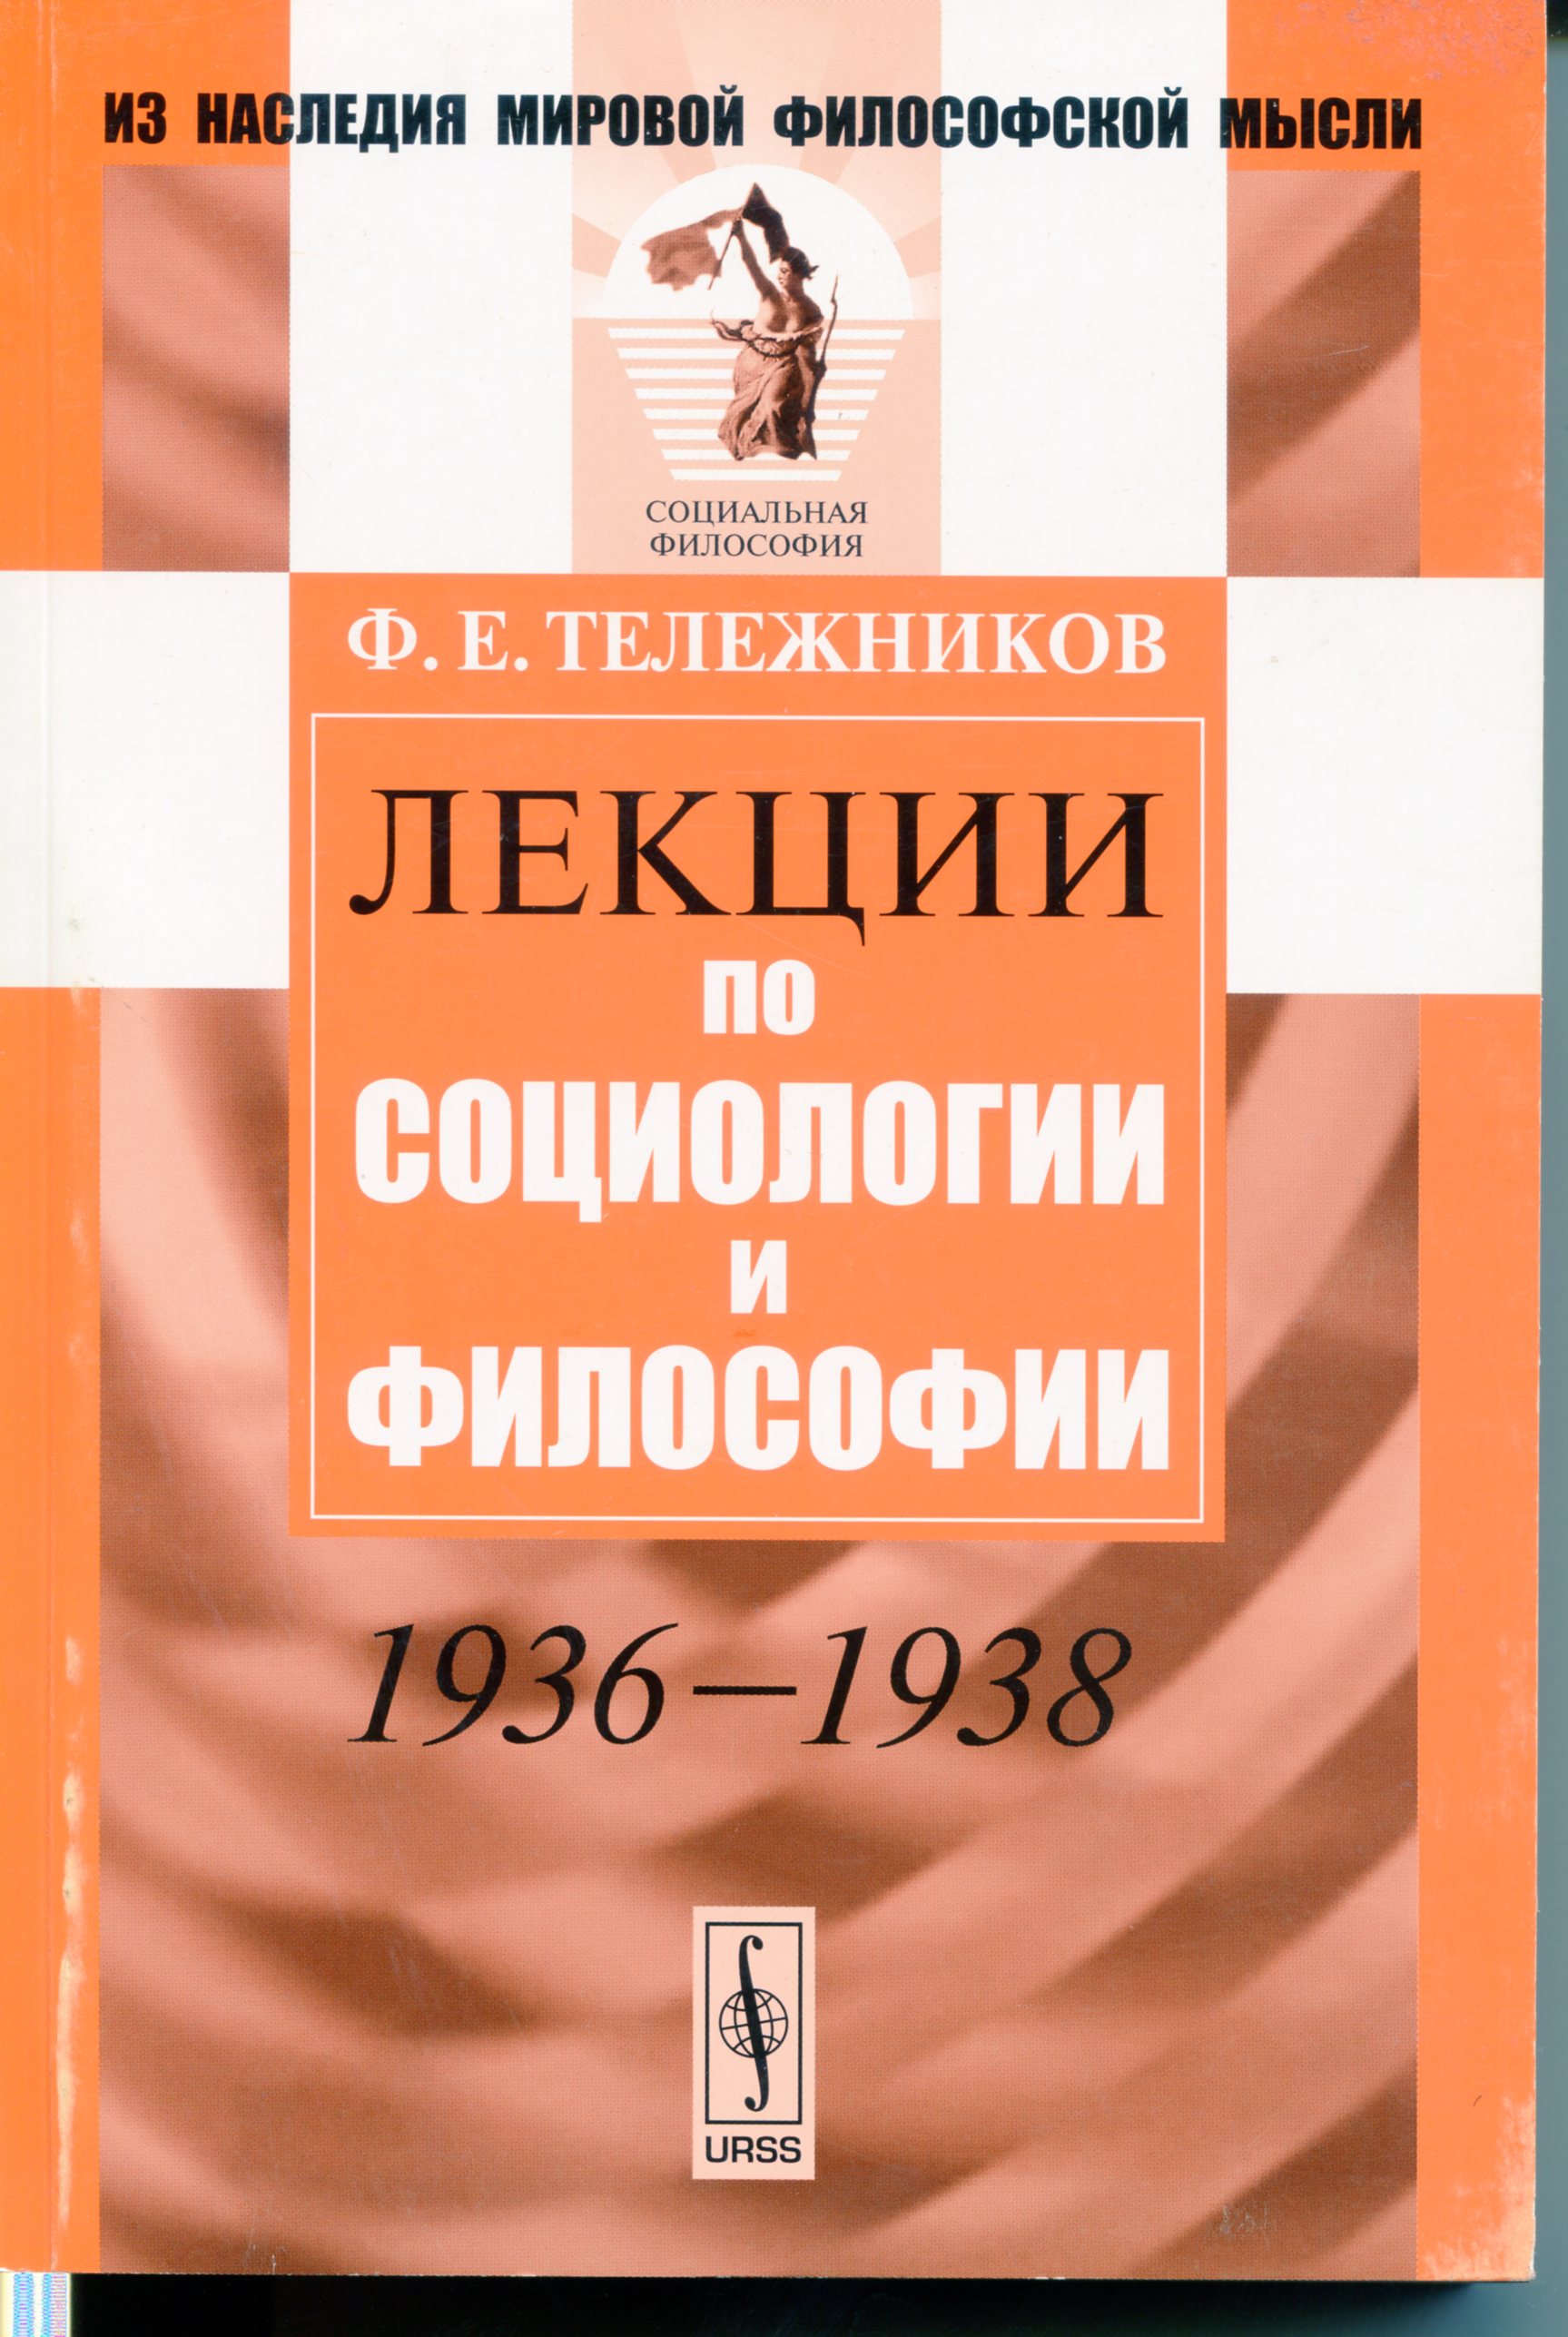 Тележников Ф. Е. Лекции по социологии и философии. М.: URSS, 2013. 448 с